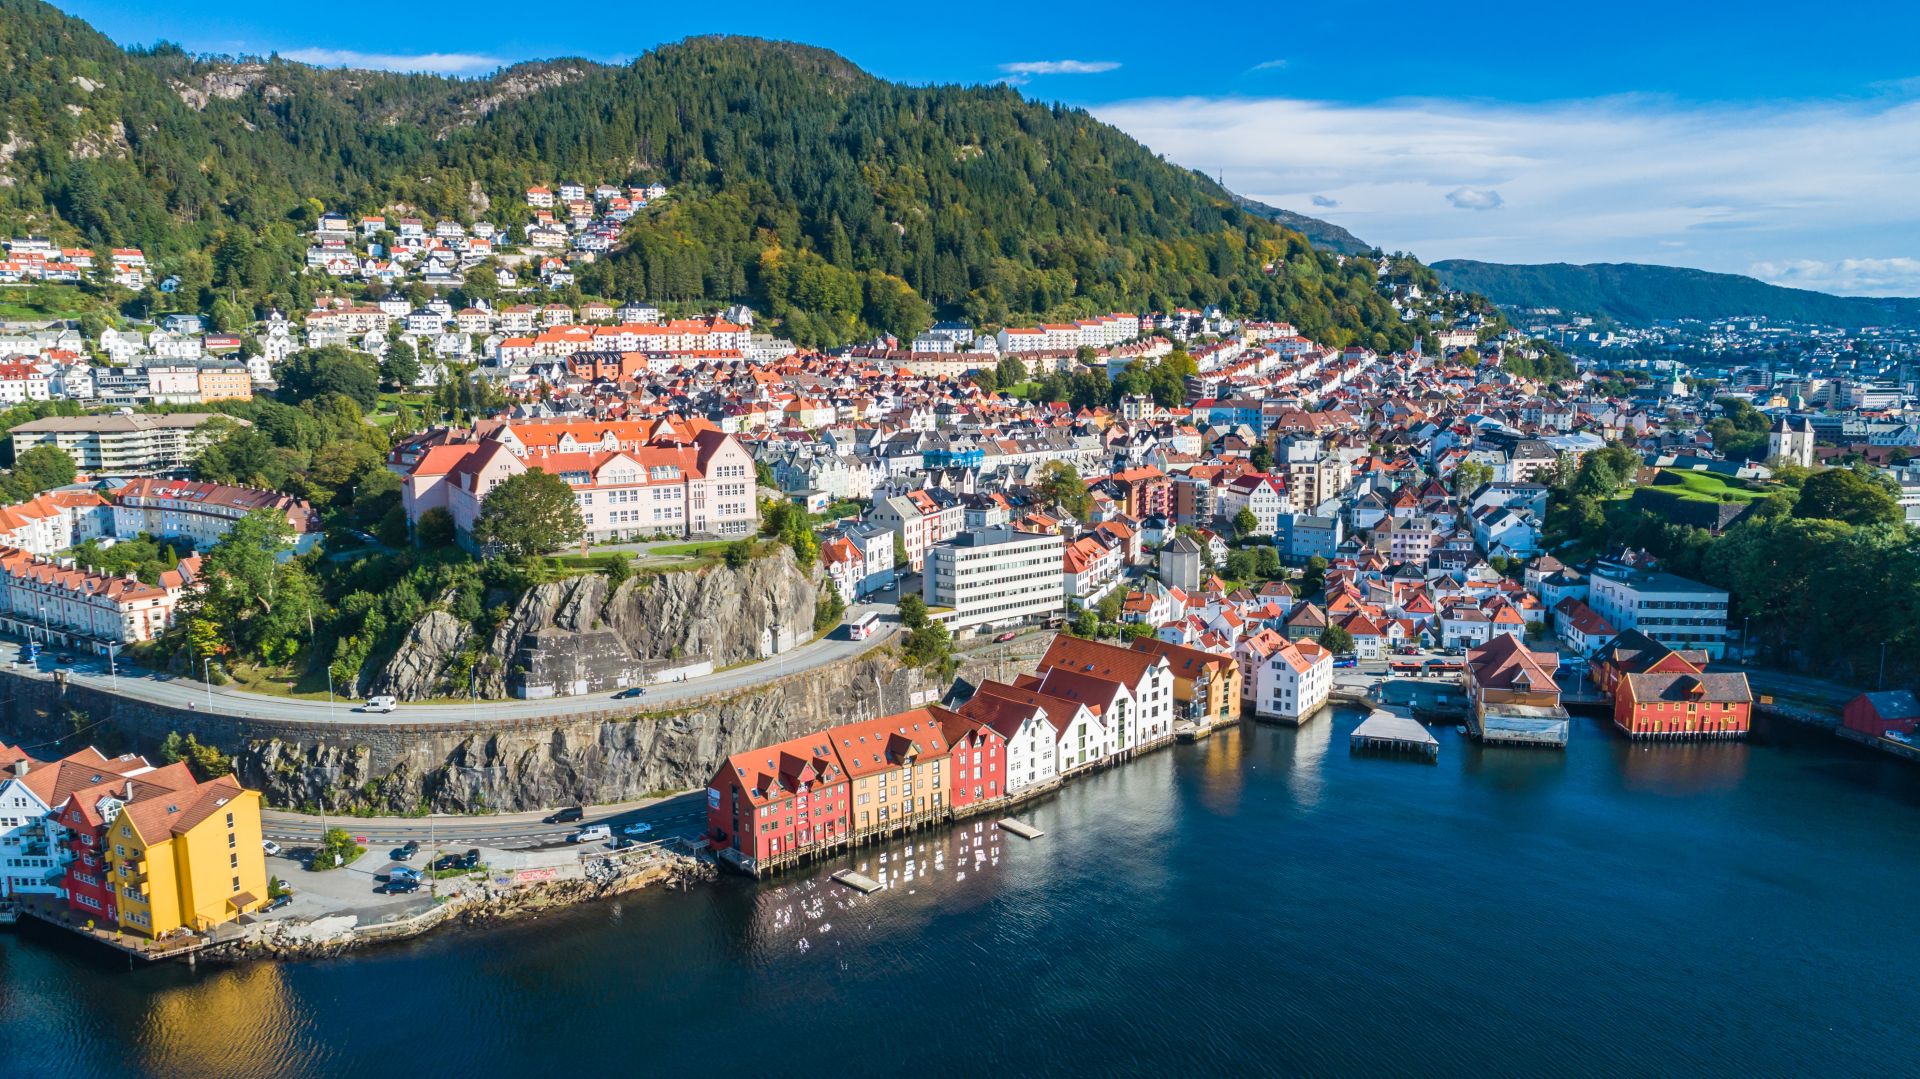 Bryggen, Bergen, Norway. Hanseatic heritage wooden commercial buildings in the city of Bergen